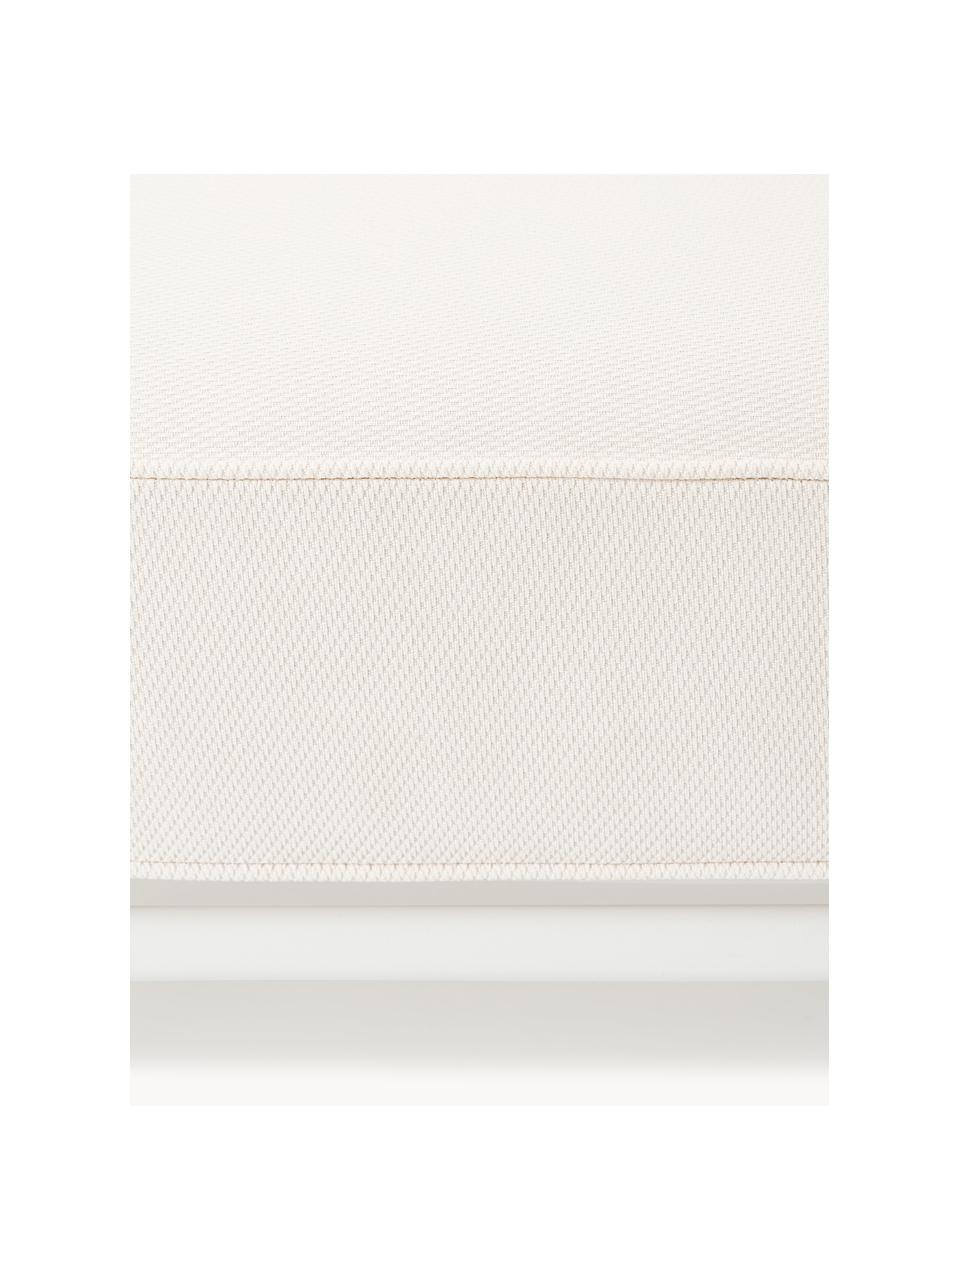 Tuin kruk Caio, Bekleding: 100% polyester Met 20.000, Frame: aluminium, Gebroken wit, wit, B 95 x D 95 cm